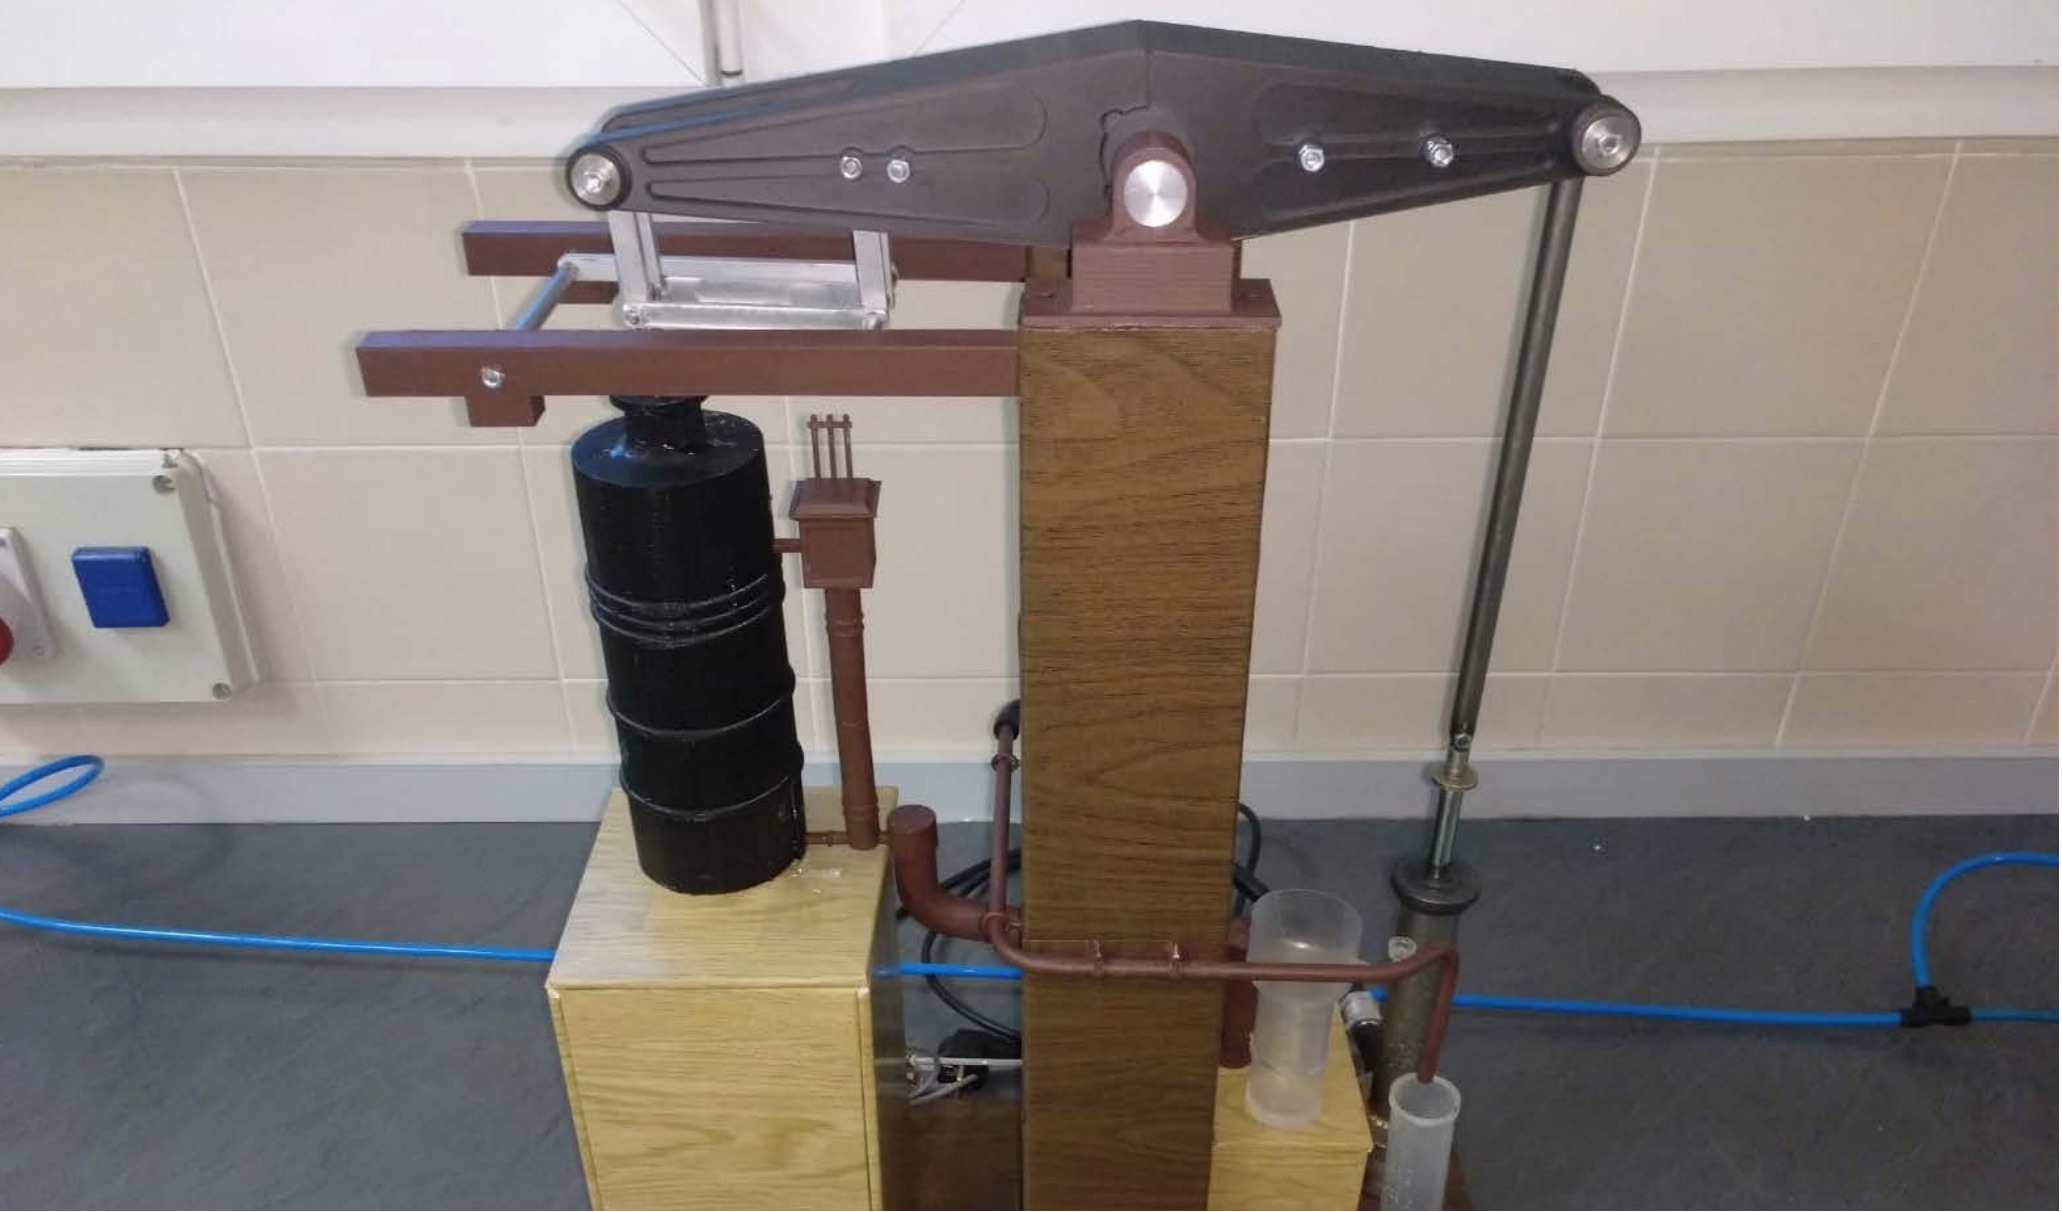 Análisis, y fabricación del prototipo de la máquina de vapor Cornish – TÉCNICA INDUSTRIAL